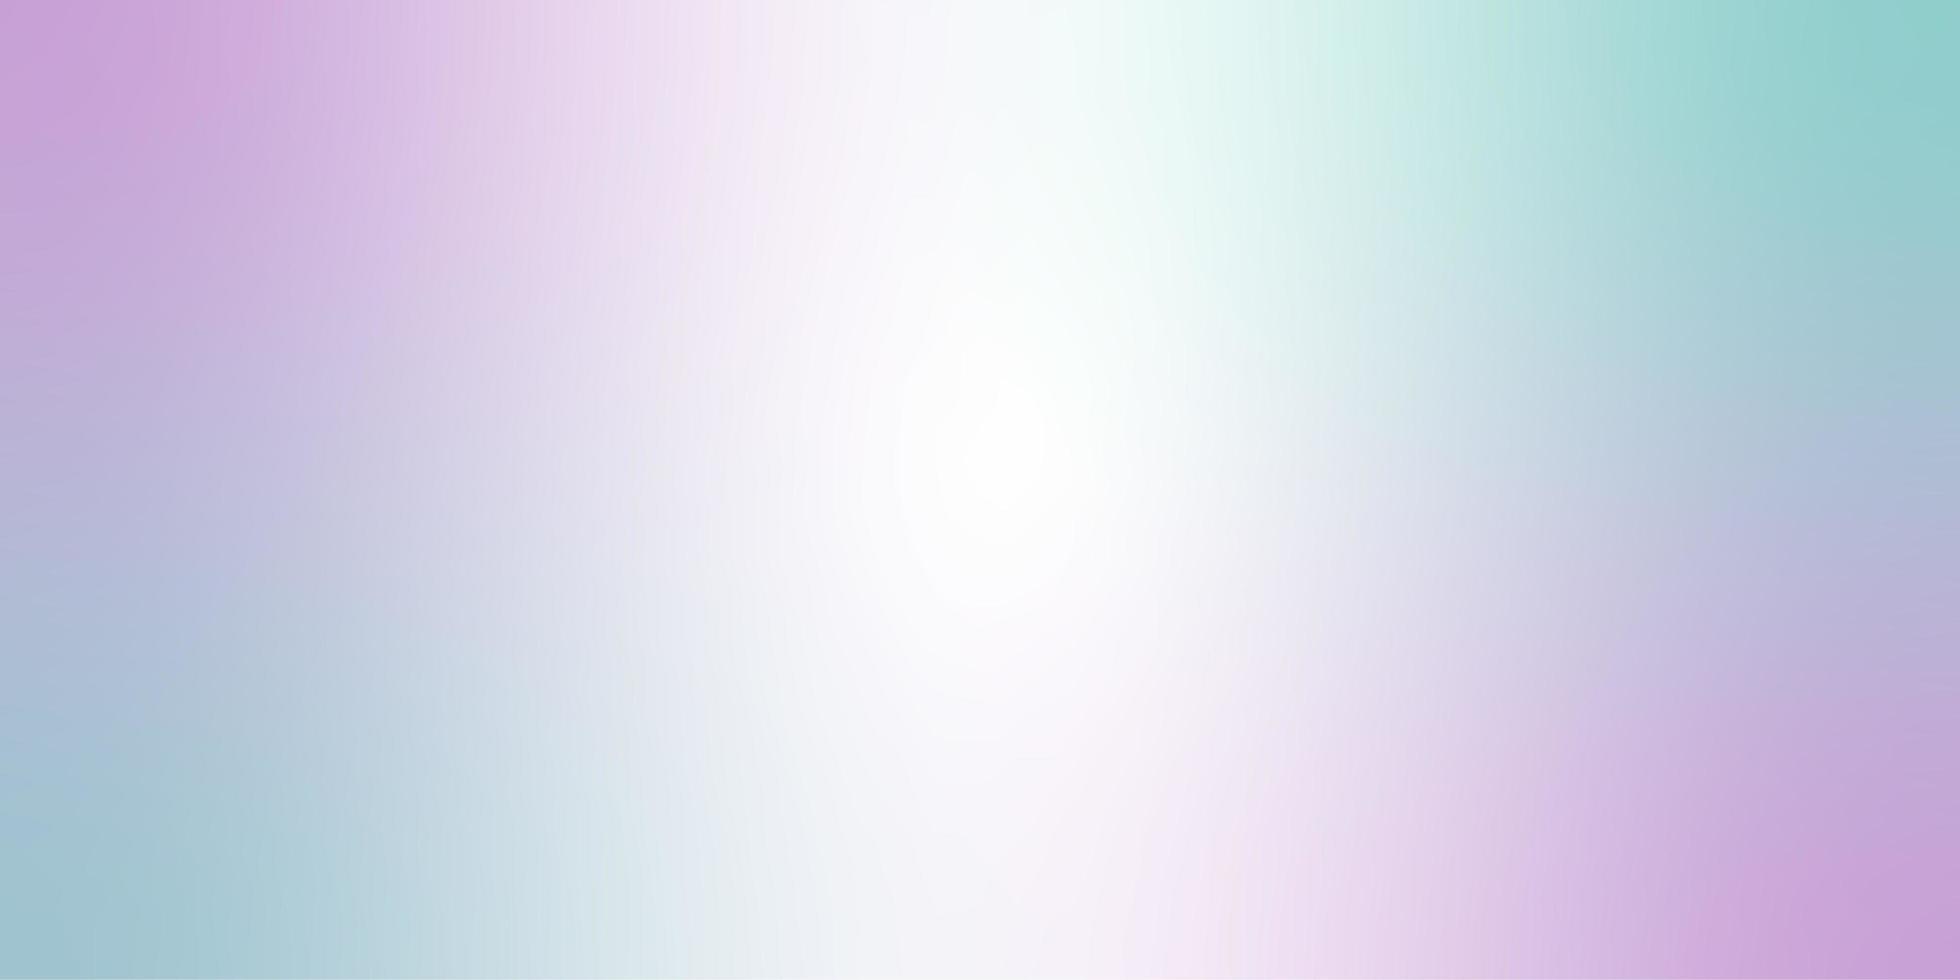 rosa pastell ombre och färgrik bakgrund vektor gradering uppsättning för tapet eller tryckbar mall foto